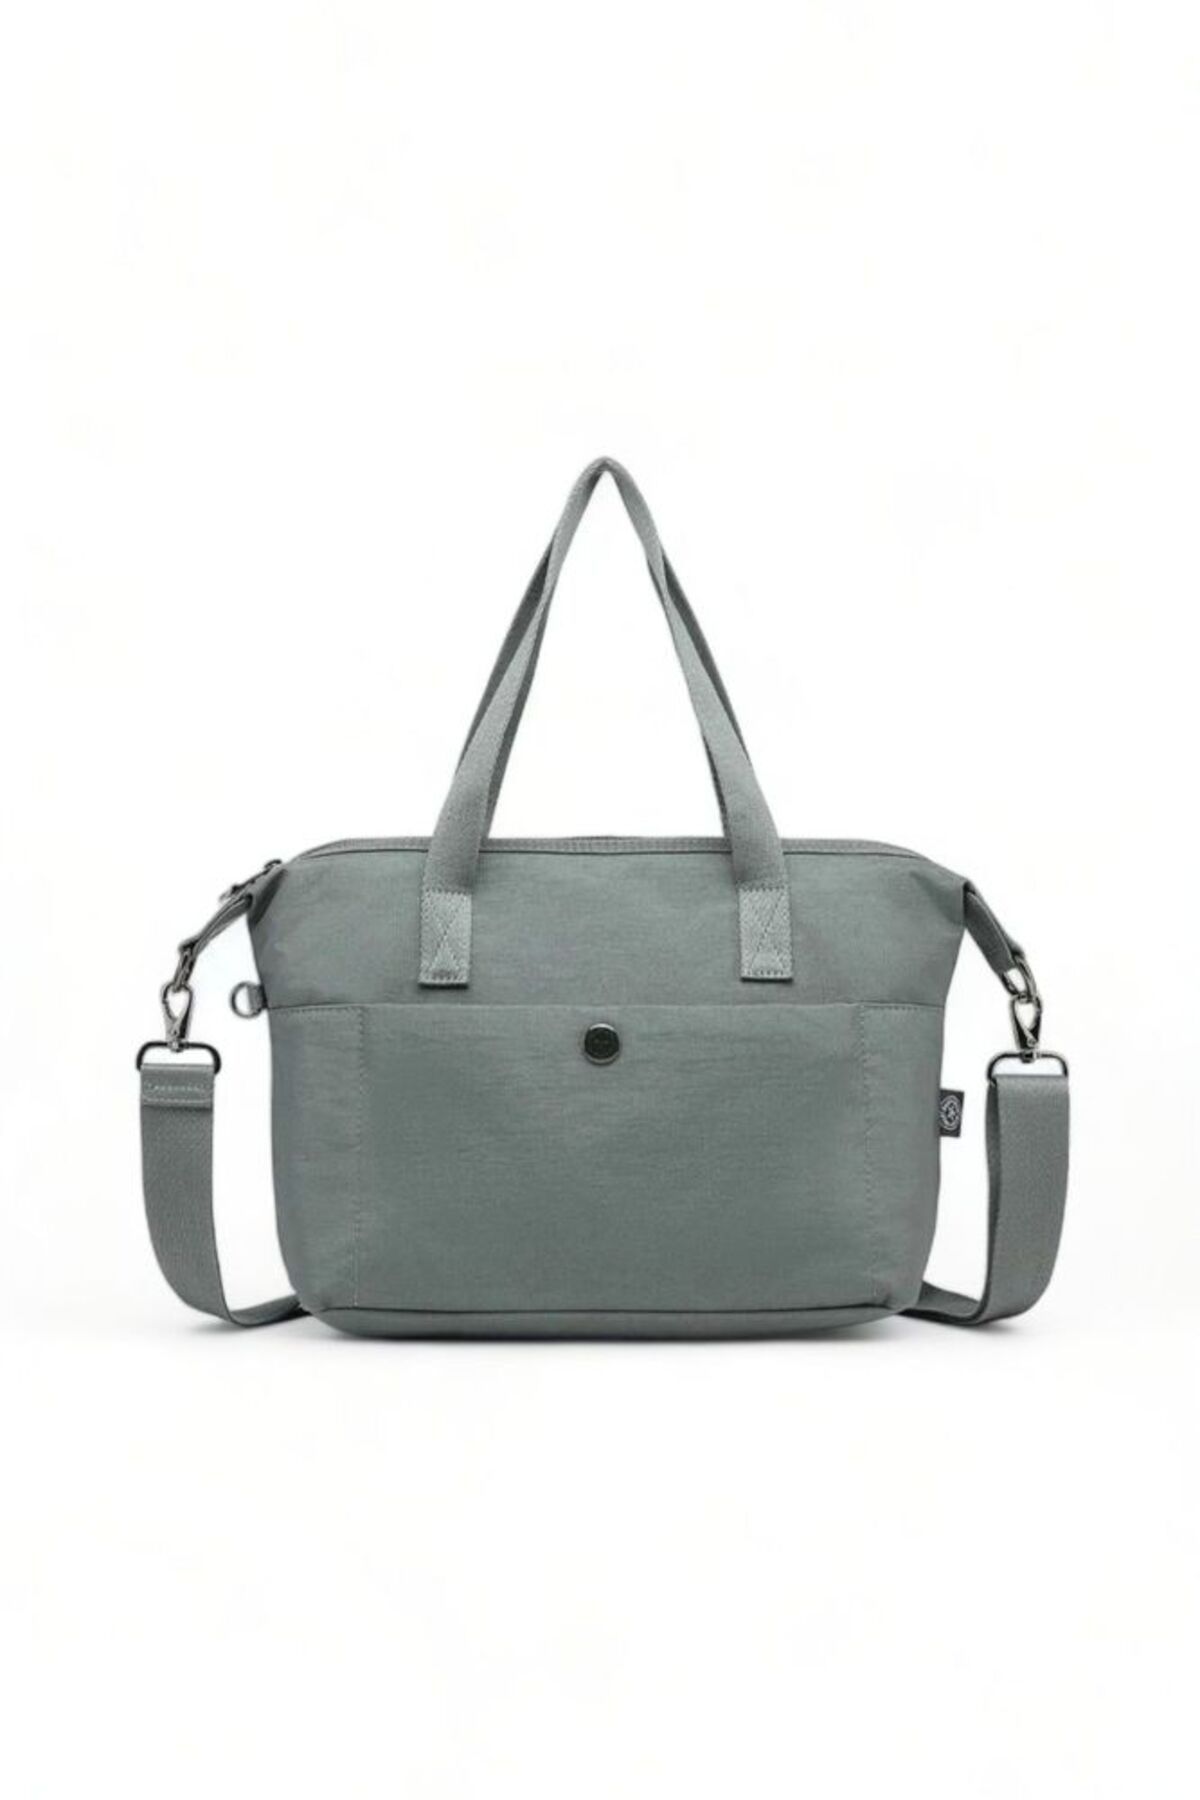 Smart Bags Koyu Yeşil Kadın Omuz Çantası Smb Mt-3127